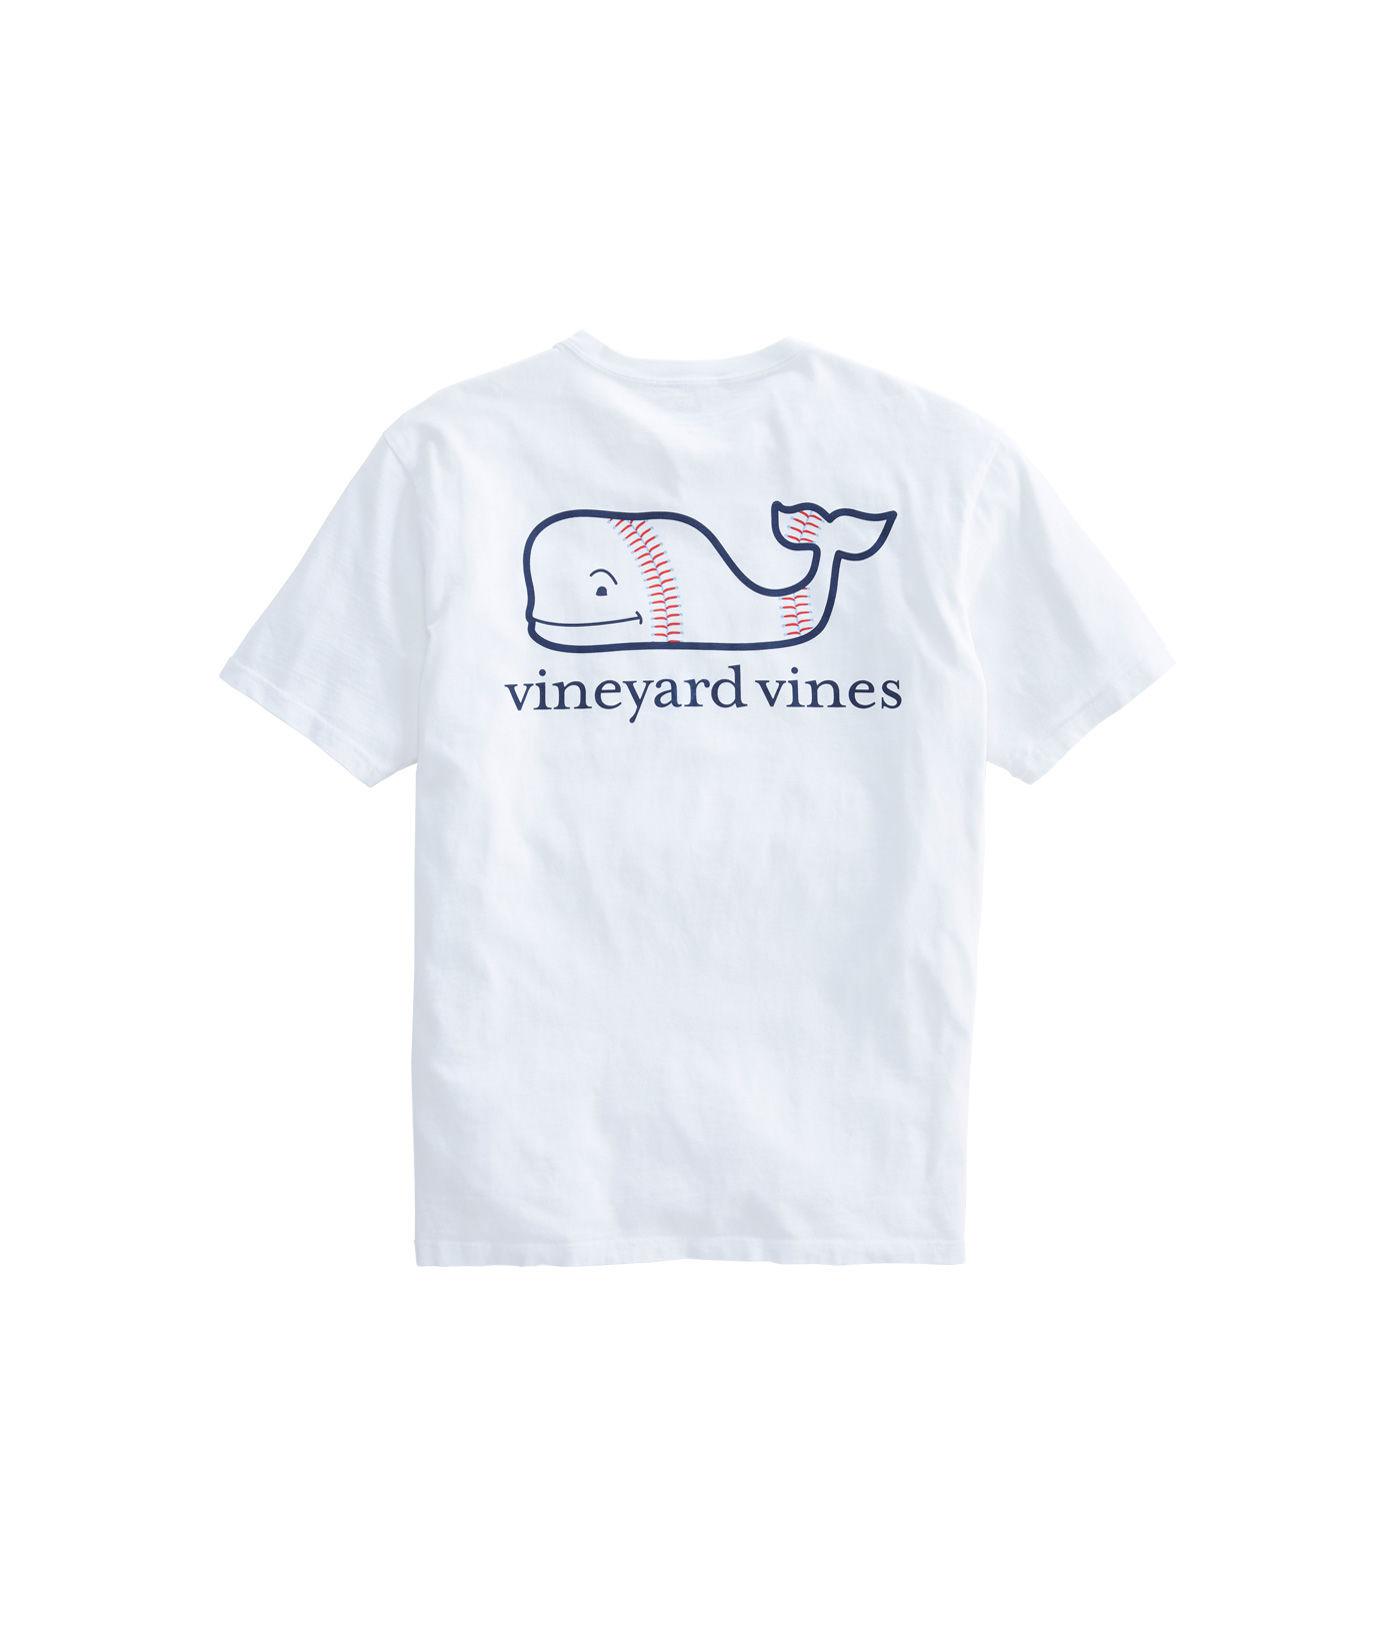 Vineyard Vines Cotton Baseball Whale Pocket T-shirt in White for Men - Lyst